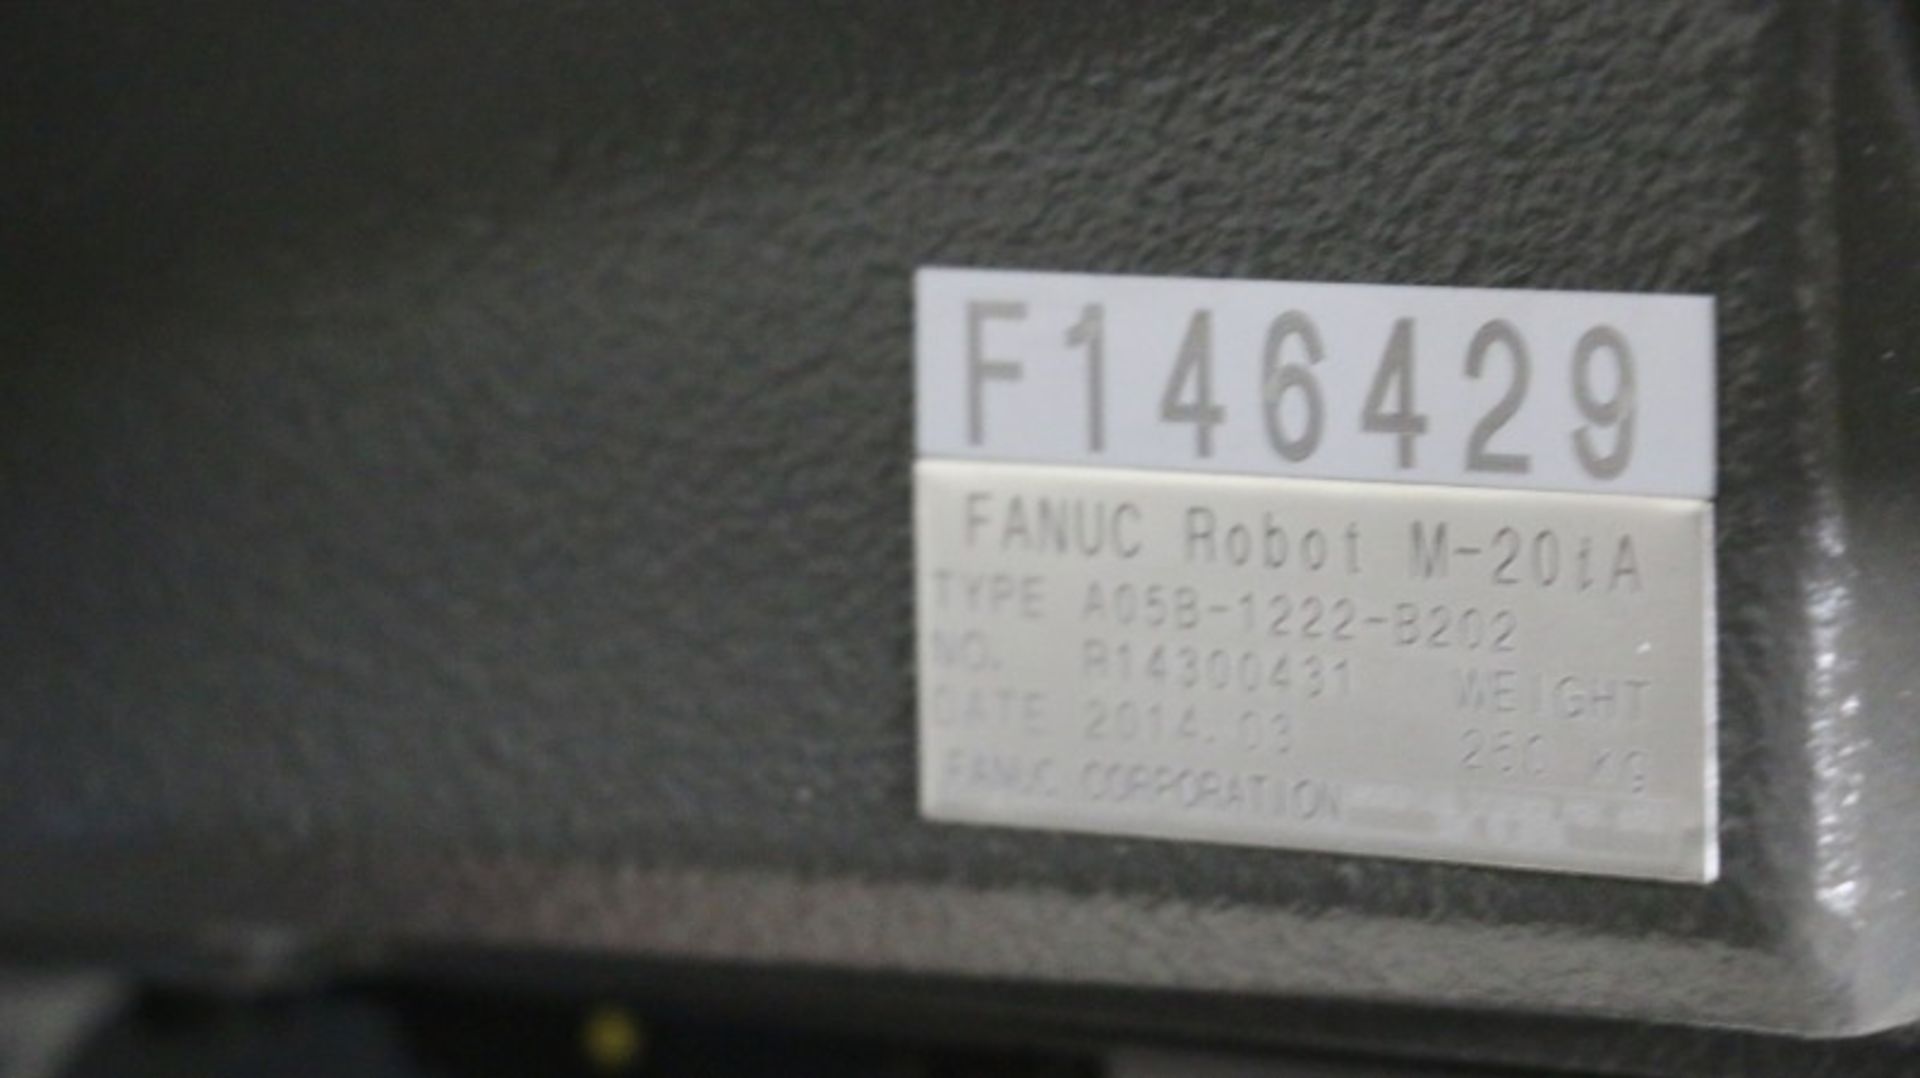 Fanuc Model M-20iA CNC Robot - Image 8 of 16